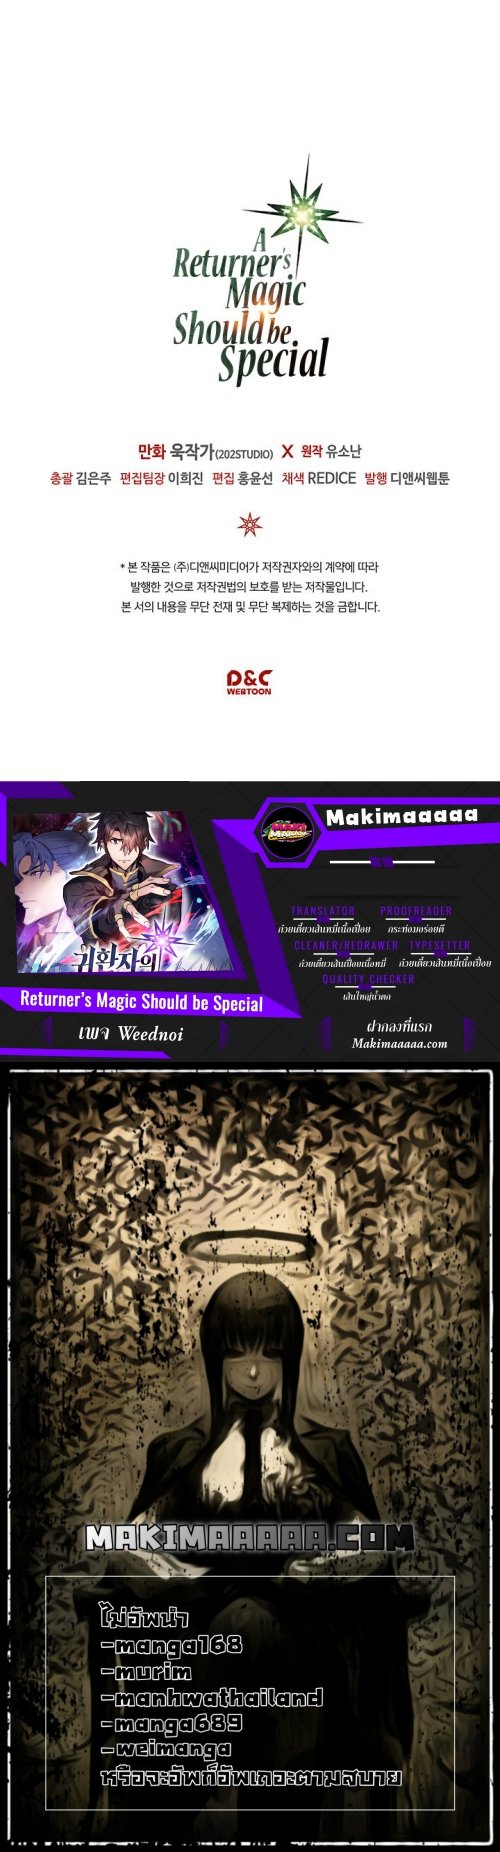 A Returner’s Magic Should Be Special90 28